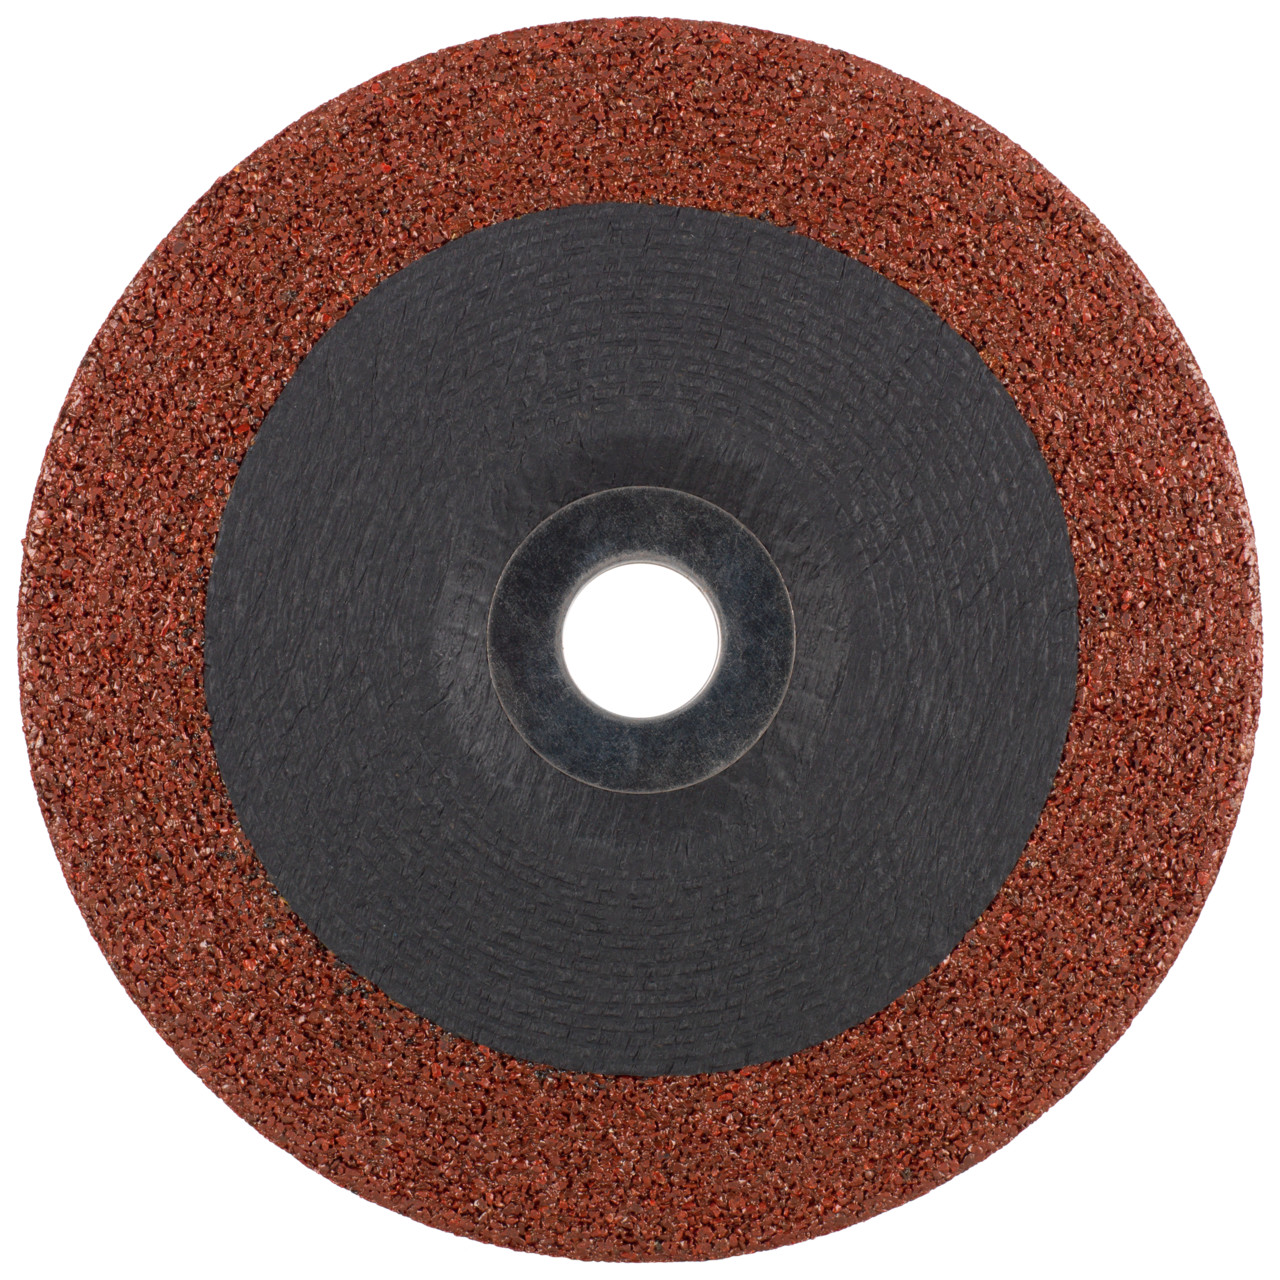 TYROLIT disco de desbaste DxUxH 230x7x22,23 3en1 para acero y acero inoxidable y fundición, forma: 27 - versión offset, Art. 466762